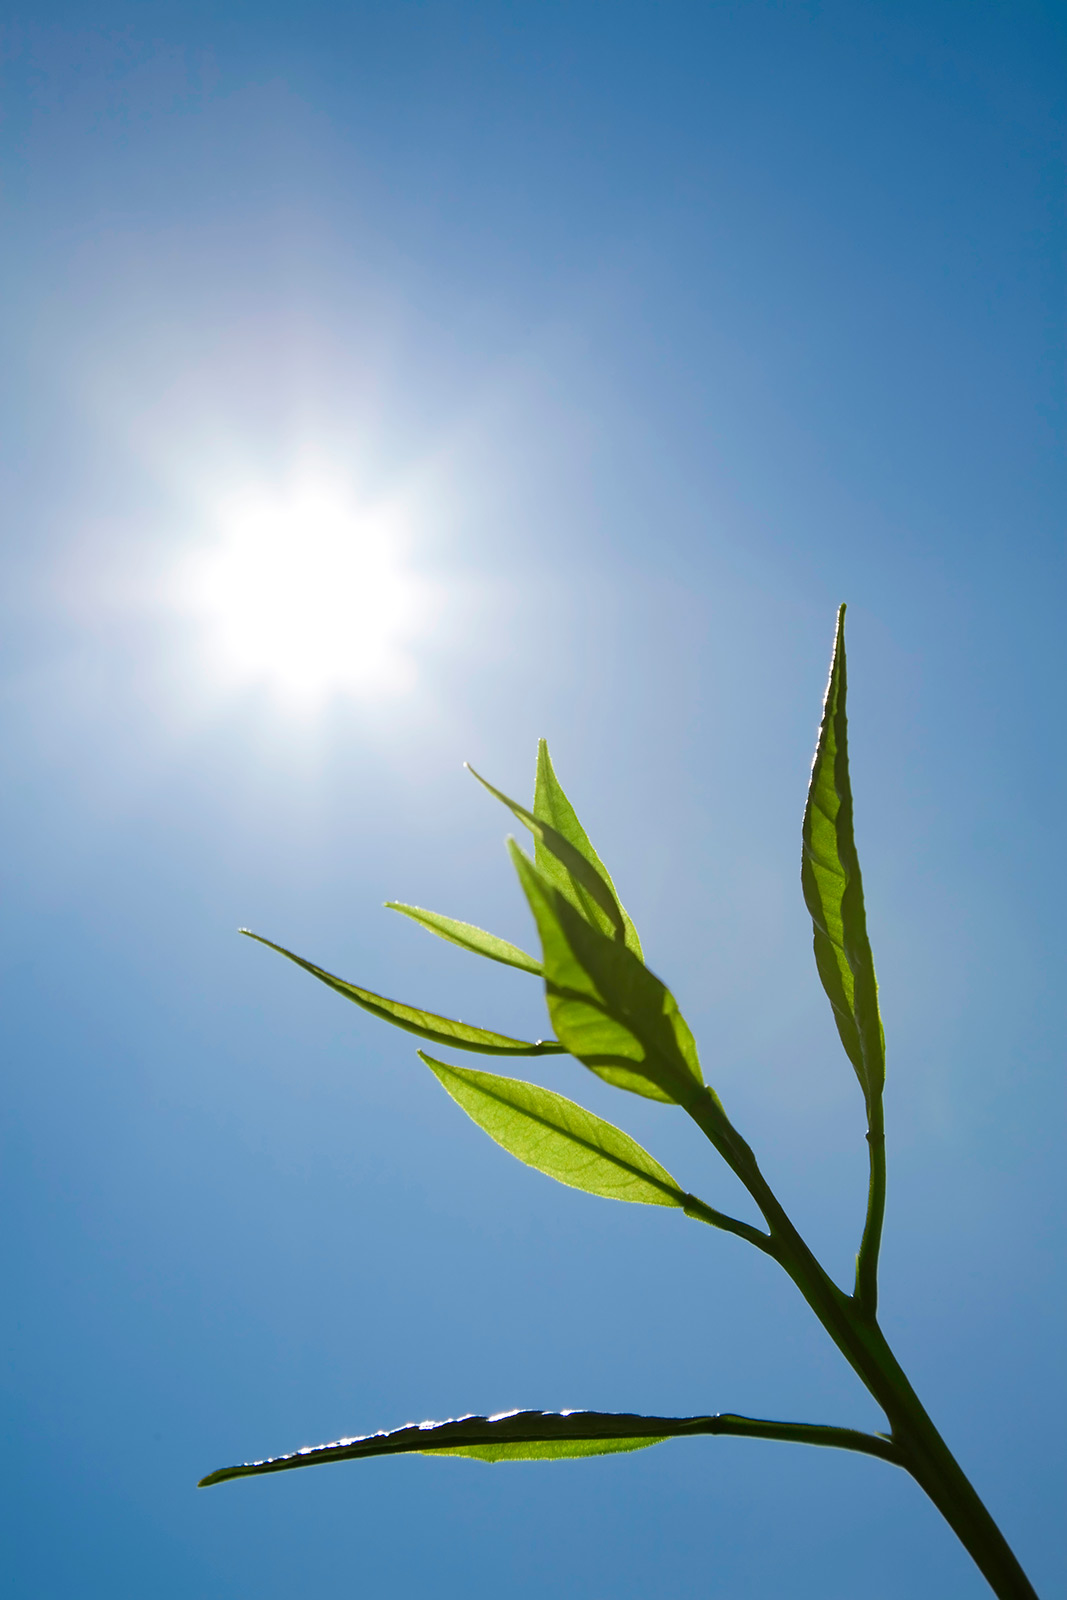 Las plantas utilizan los azúcares producidos por la fotosíntesis para saber la hora del día, según un estudio publicado en la revista Nature.